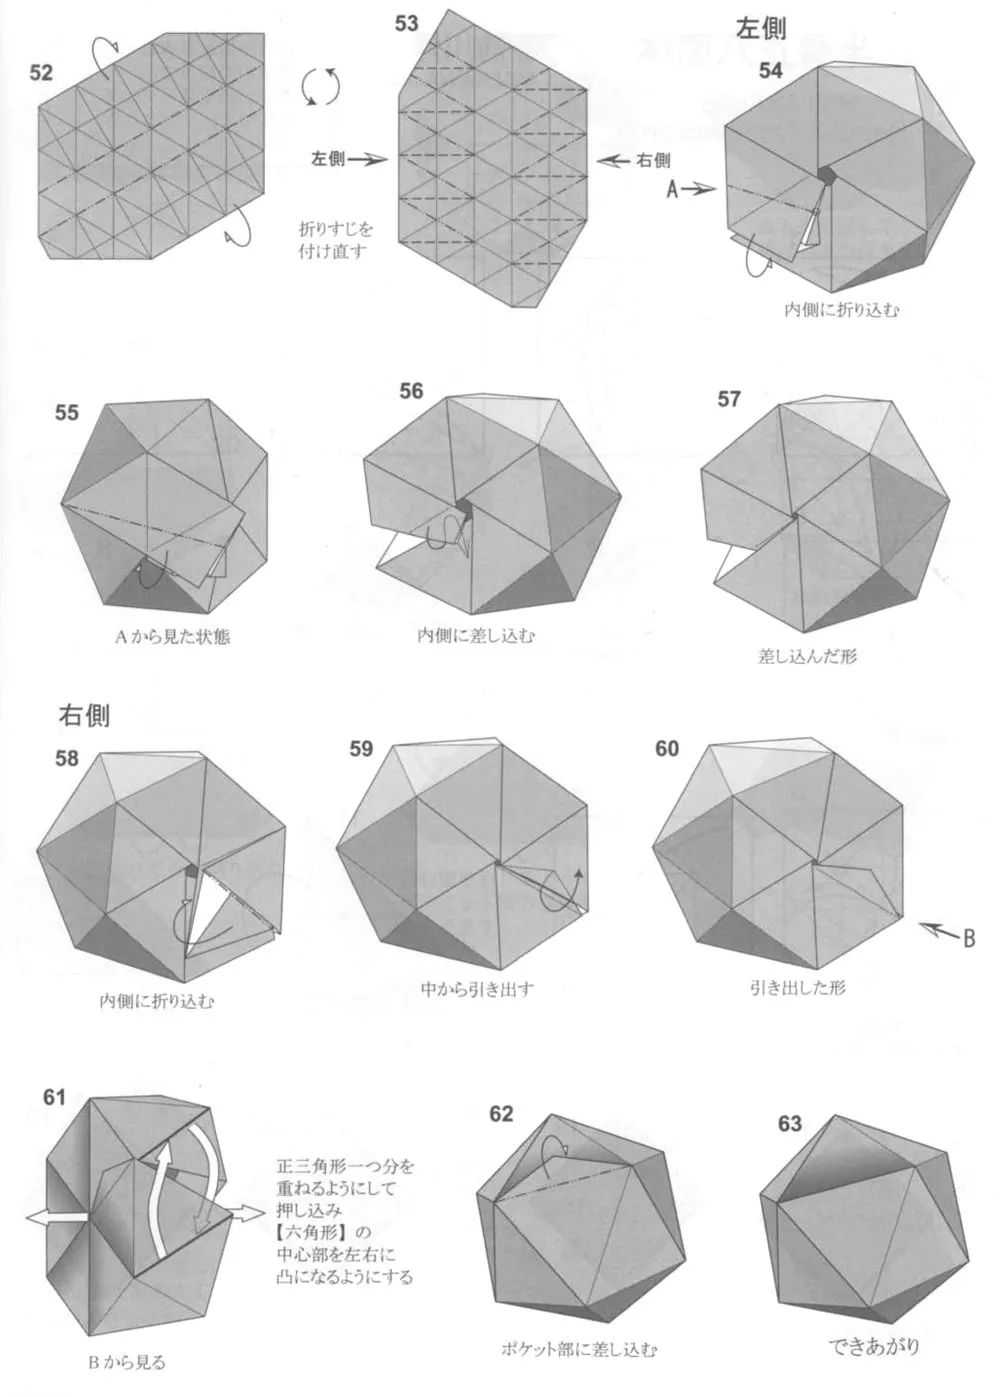 no.1492 今天来用一张纸折出面最多的正多面体——正二十面体